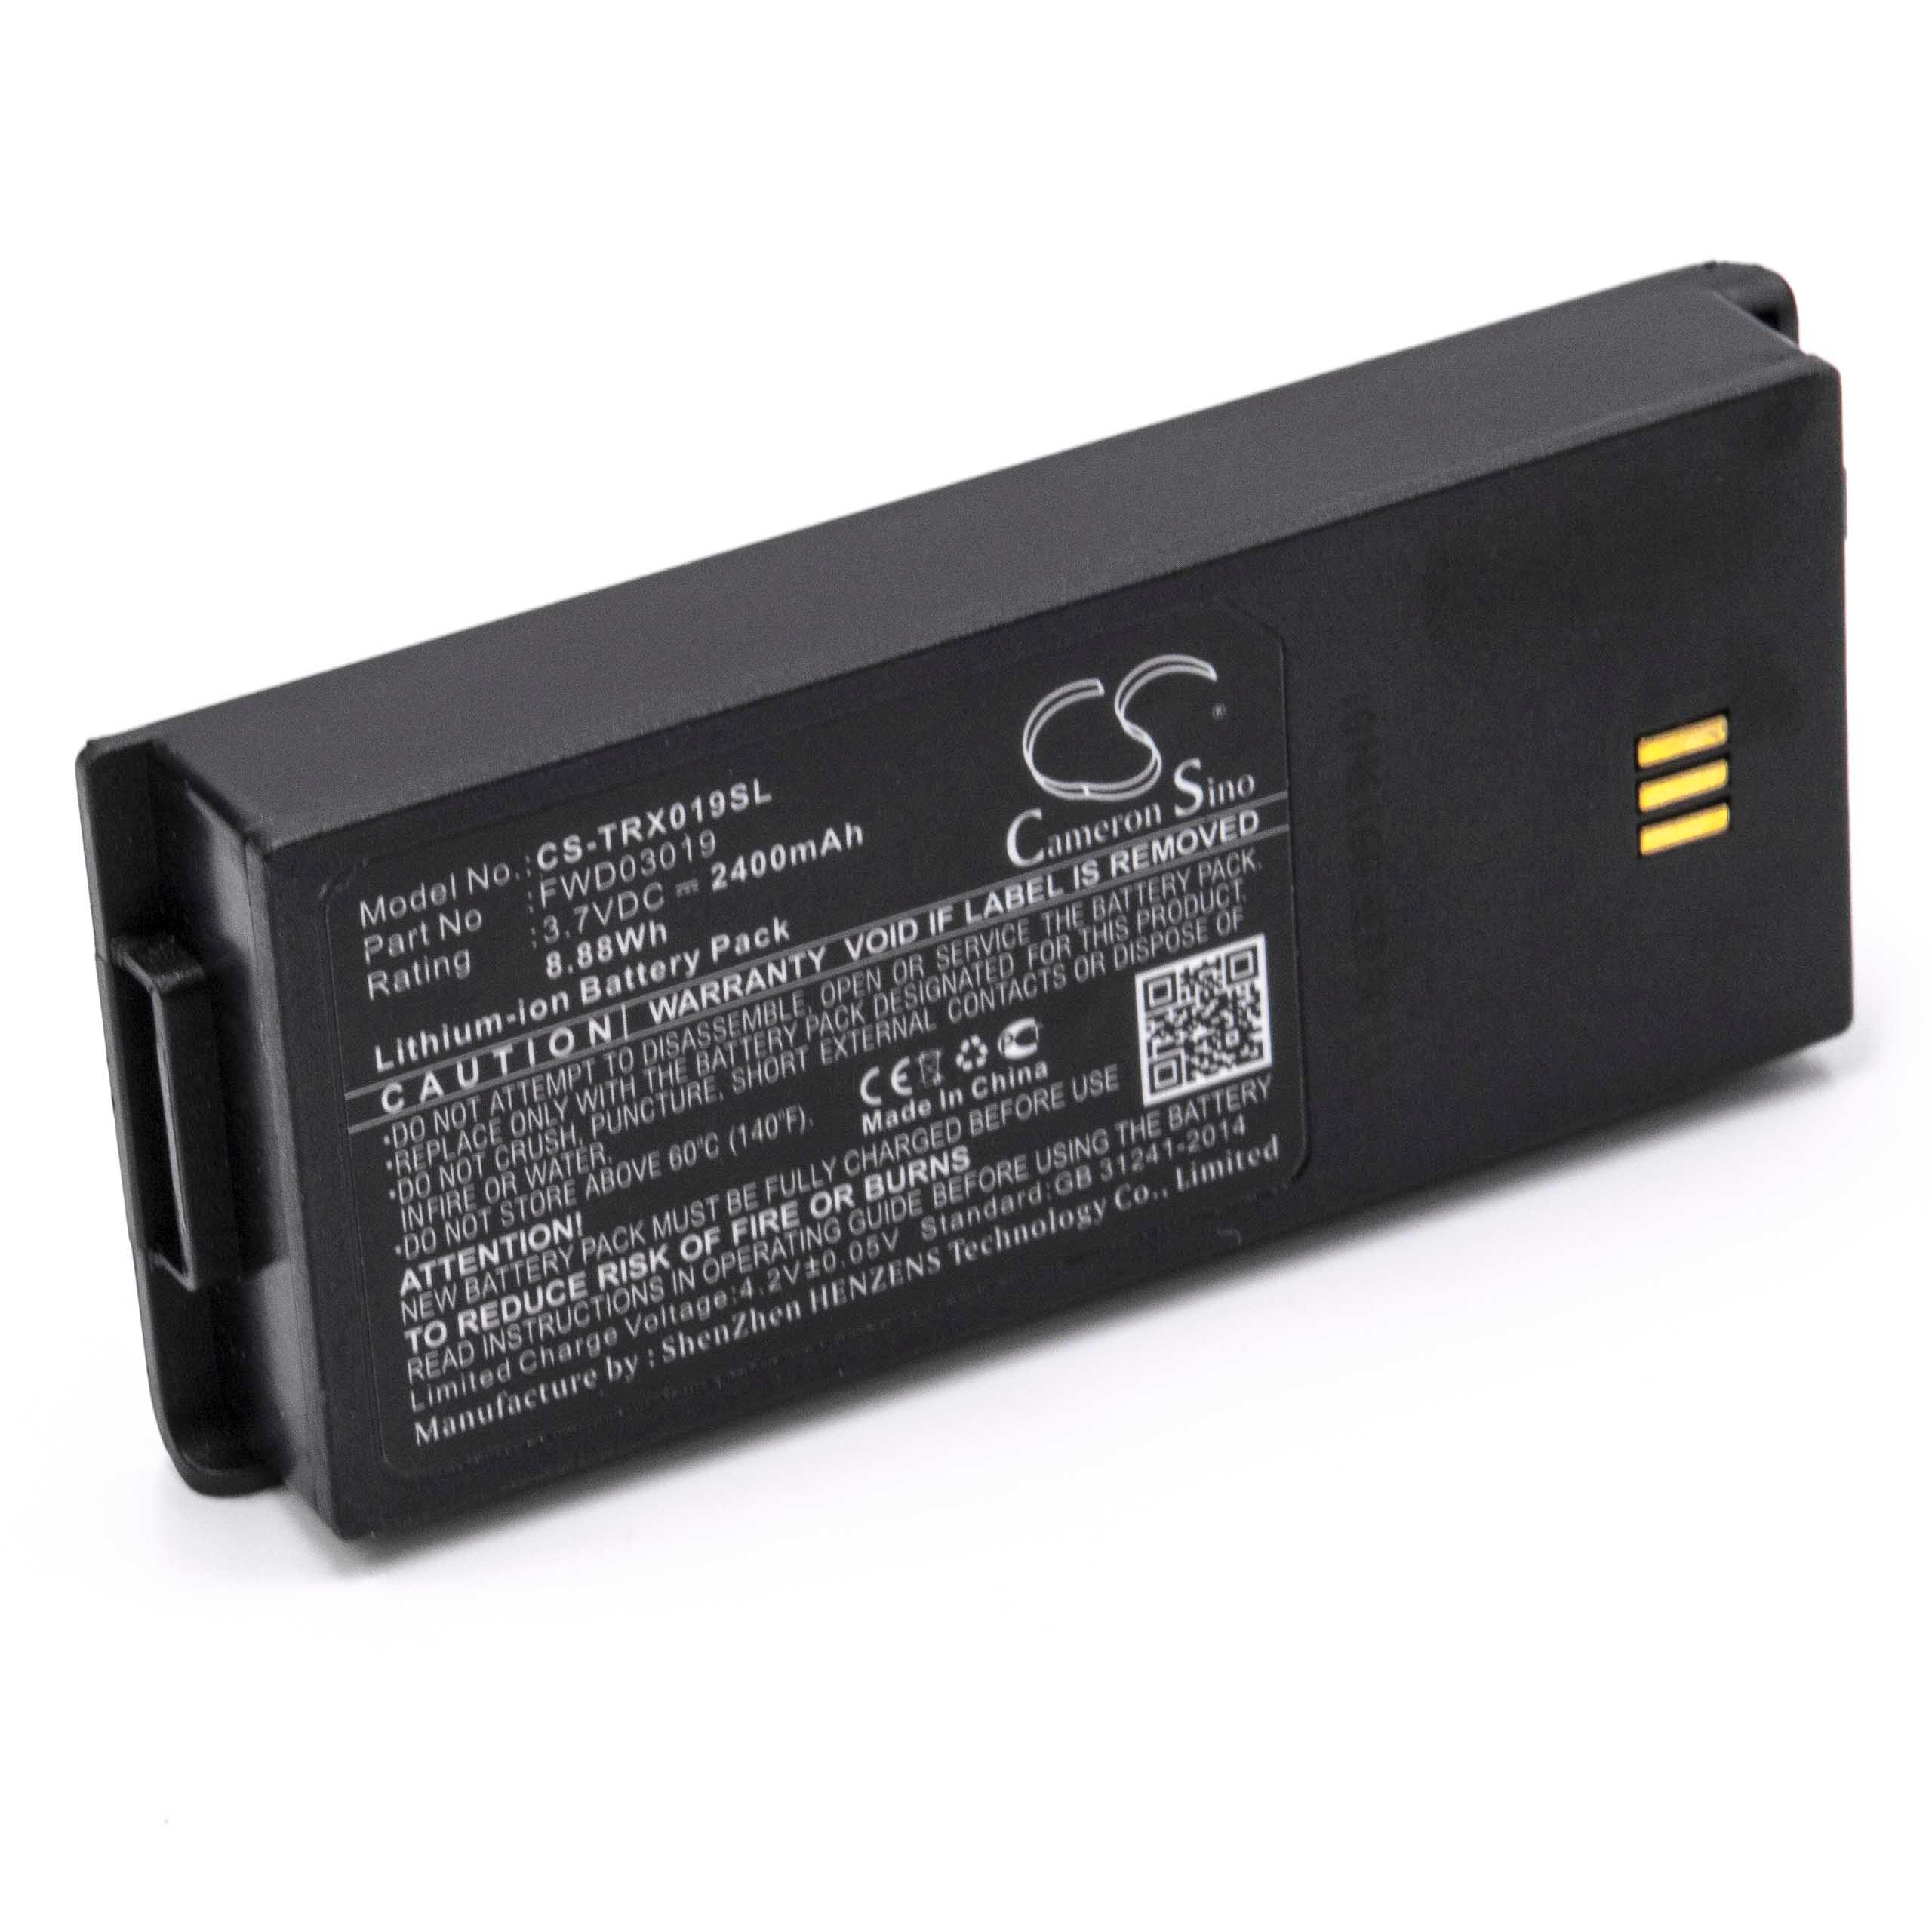 Batterie remplace Thuraya FWD03019, FWD02223 pour téléphone portable satellite - 2400mAh, 3,7V, Li-ion